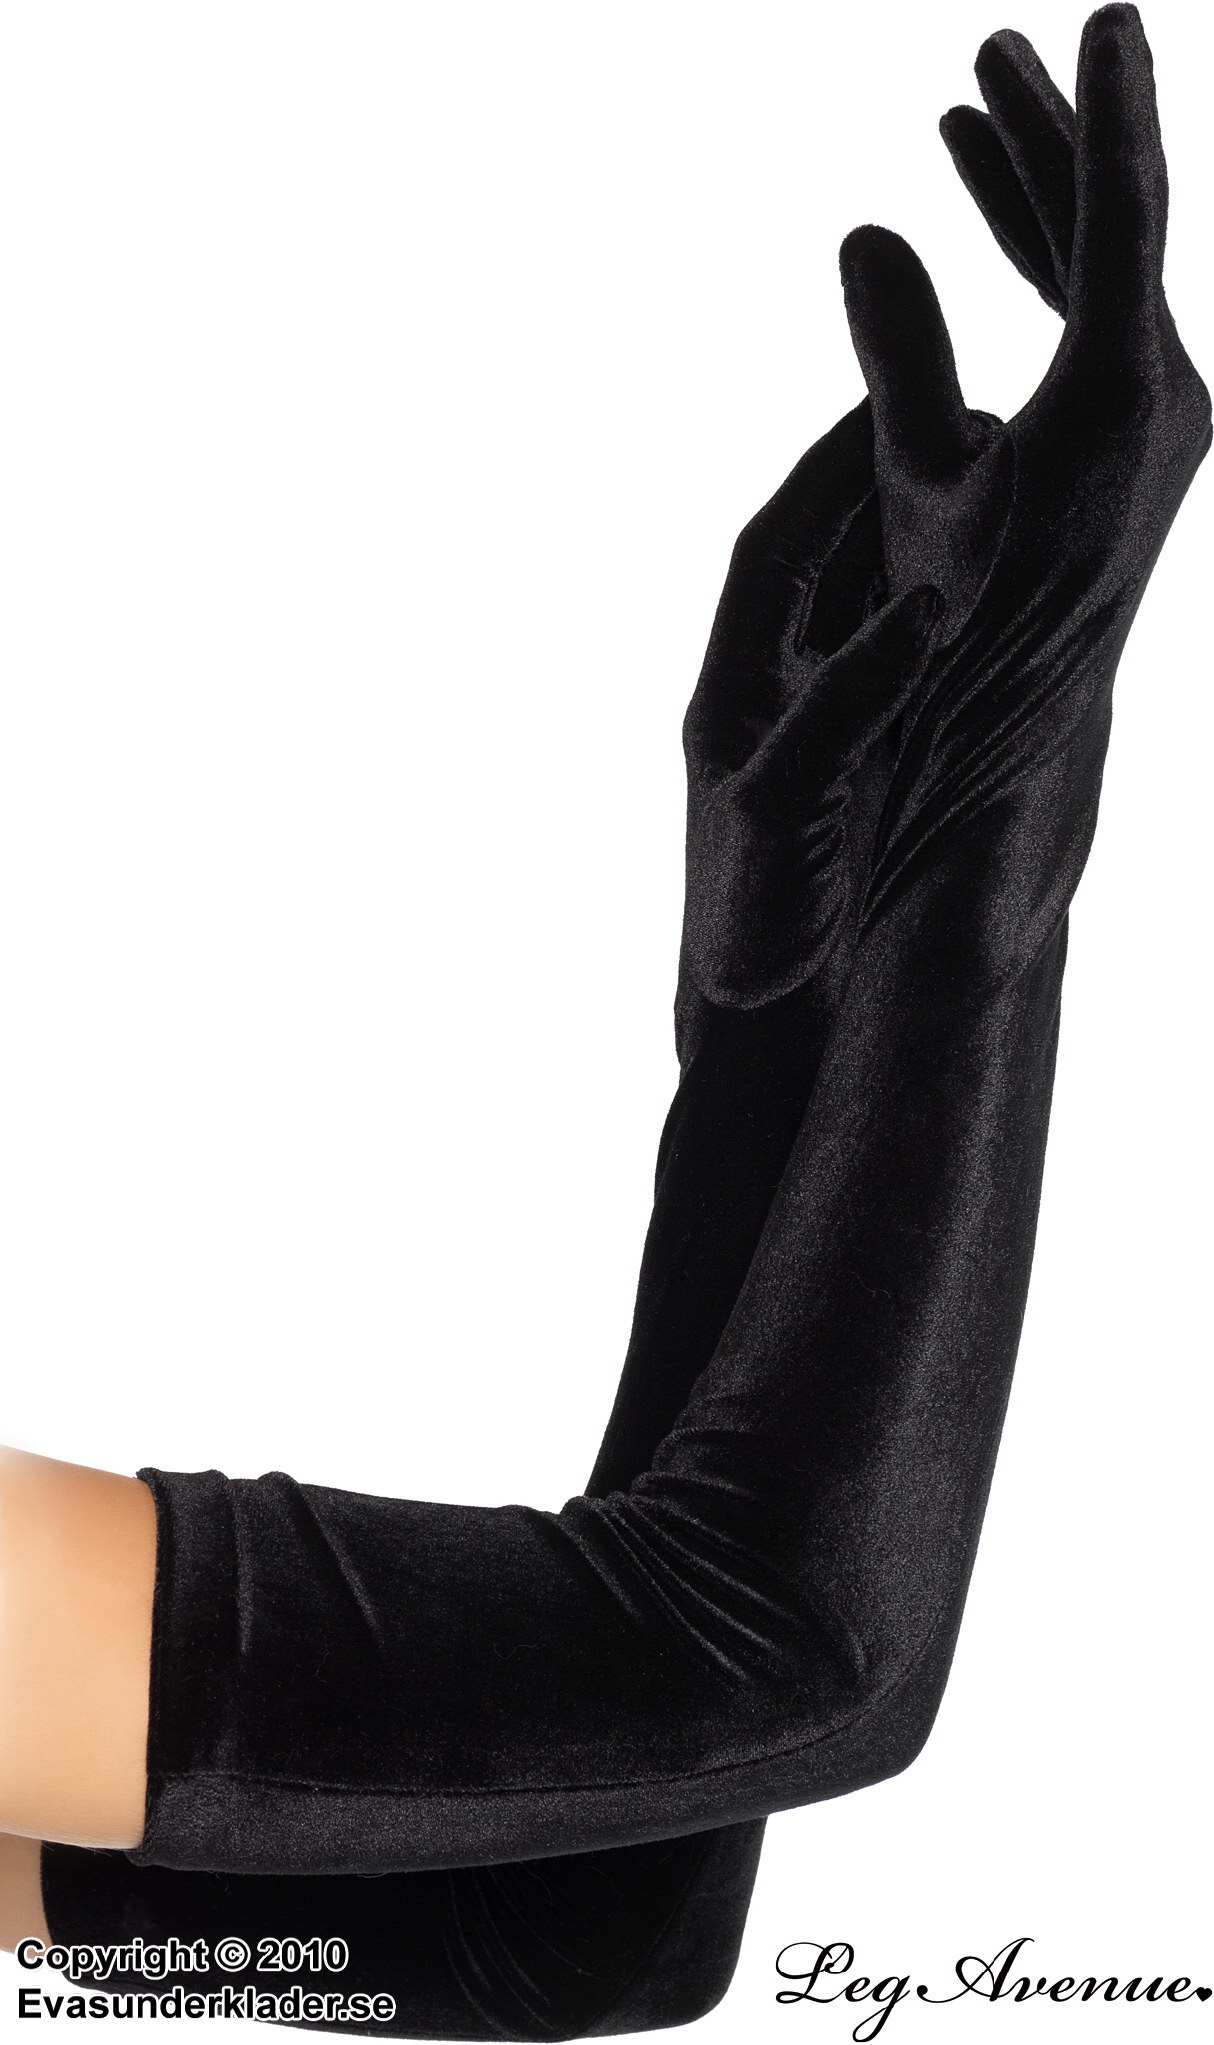 Long gloves, velvet